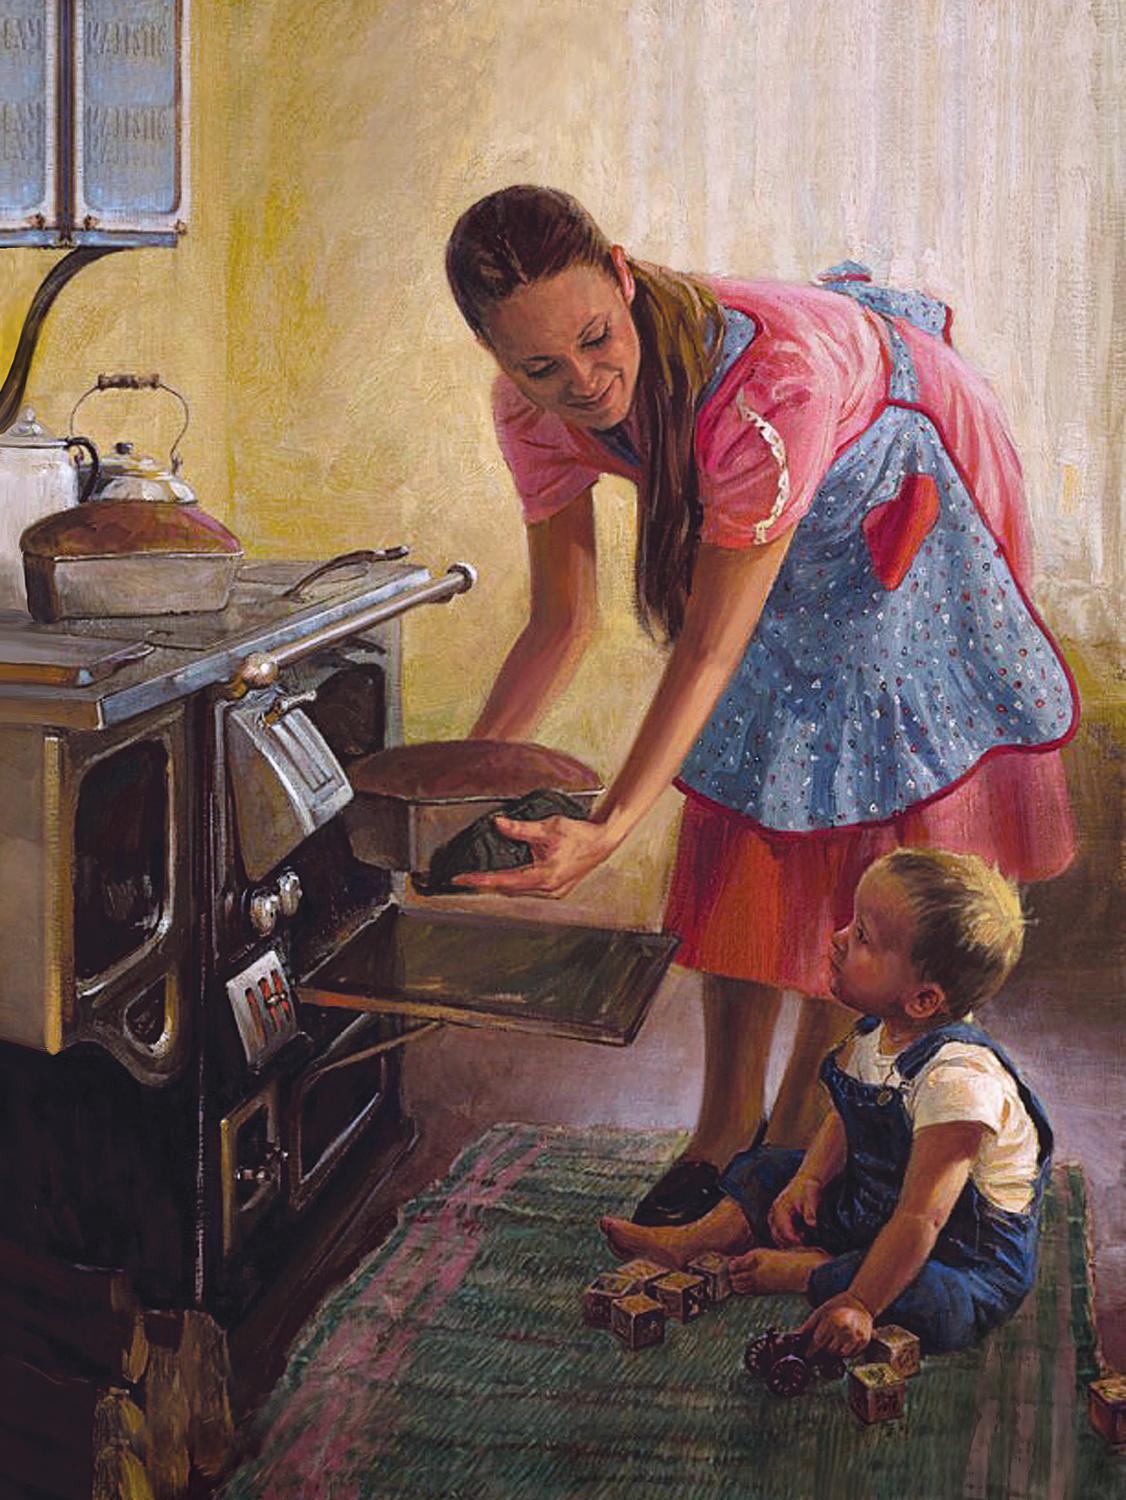 Мама моет бабушку. Norman Rockwell художник домохозяйка. Живопись дети на кухне. Сюжетные картины. Сюжетная картина на кухне.